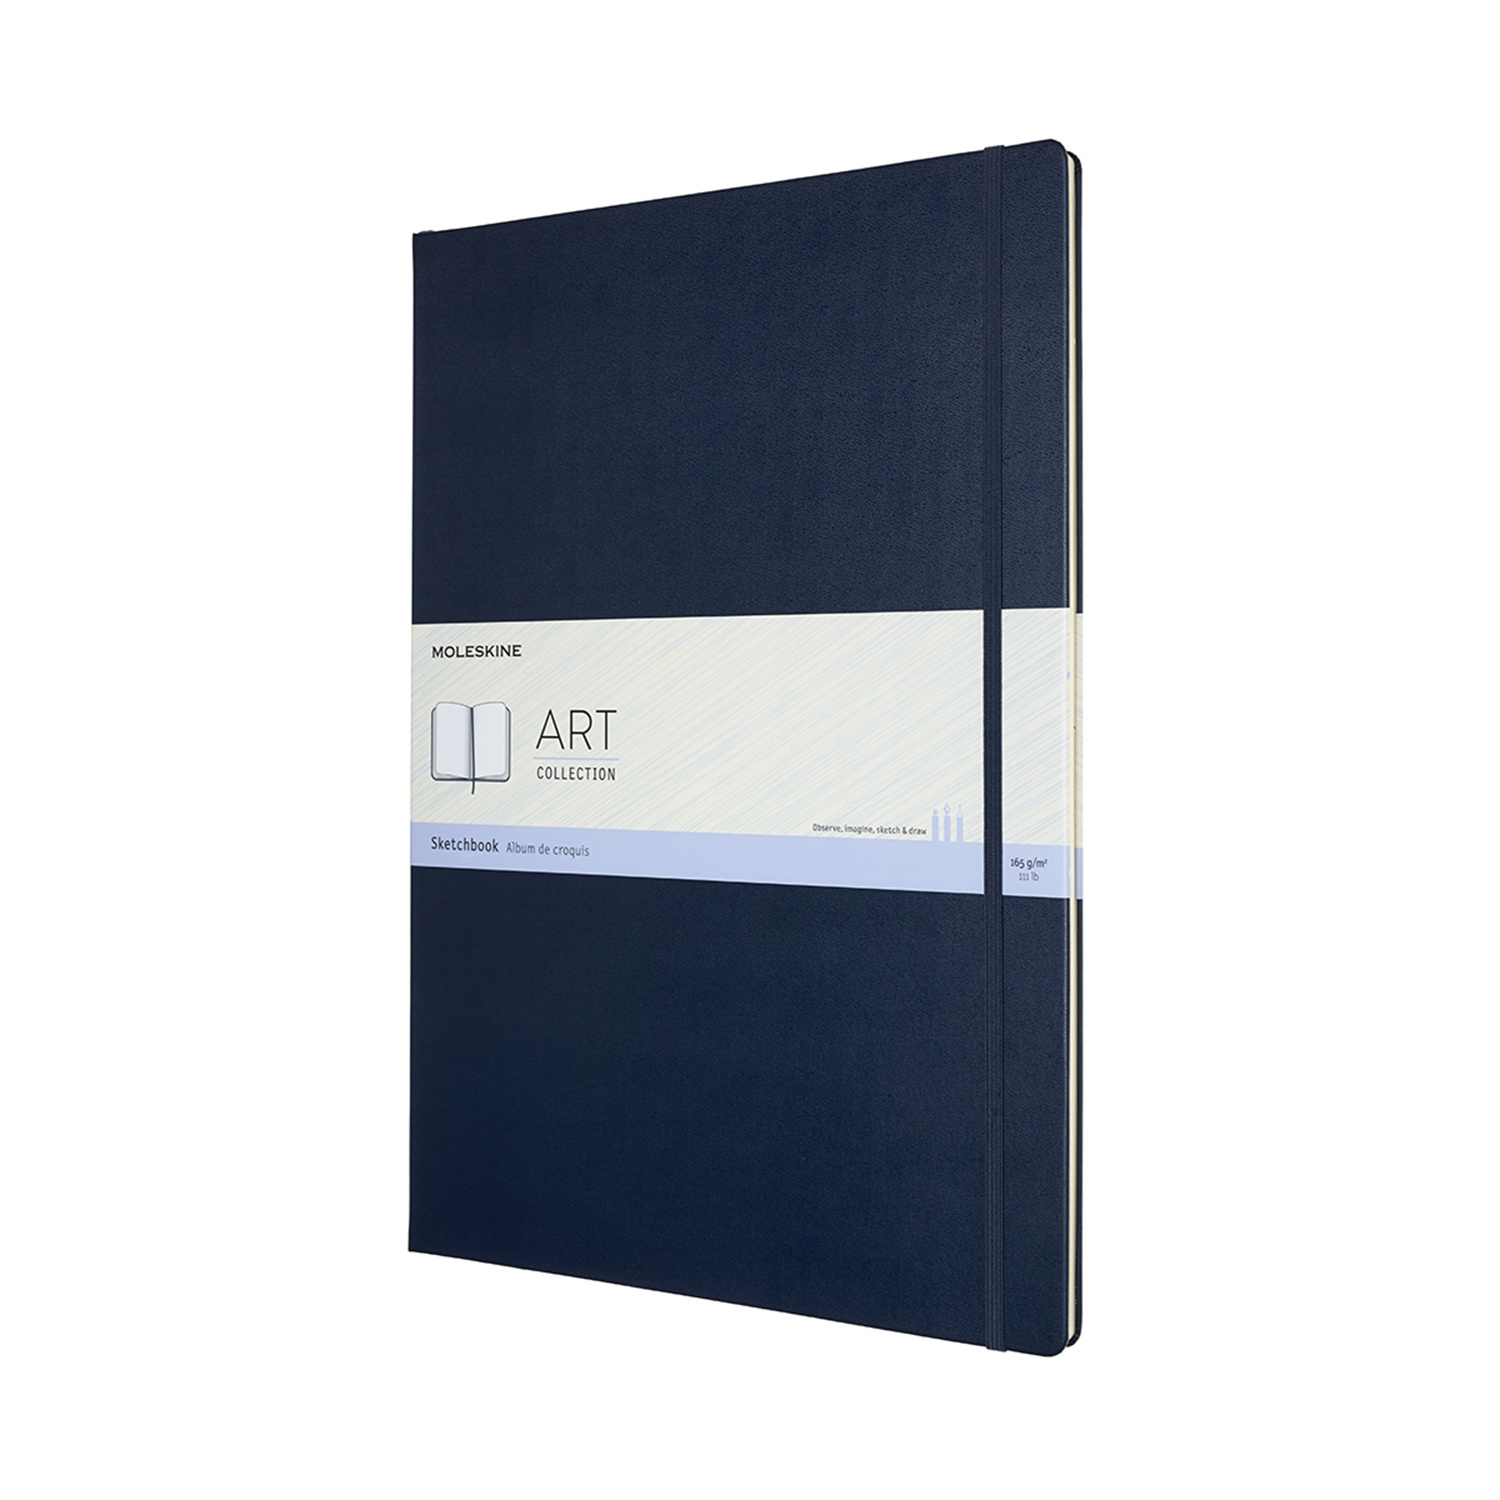 Скетчбук для рисования ART SKETCHBOOK 120г/кв.м (А3) 297х420мм 52л. синий сапфир по 3 865.00 руб от Moleskine